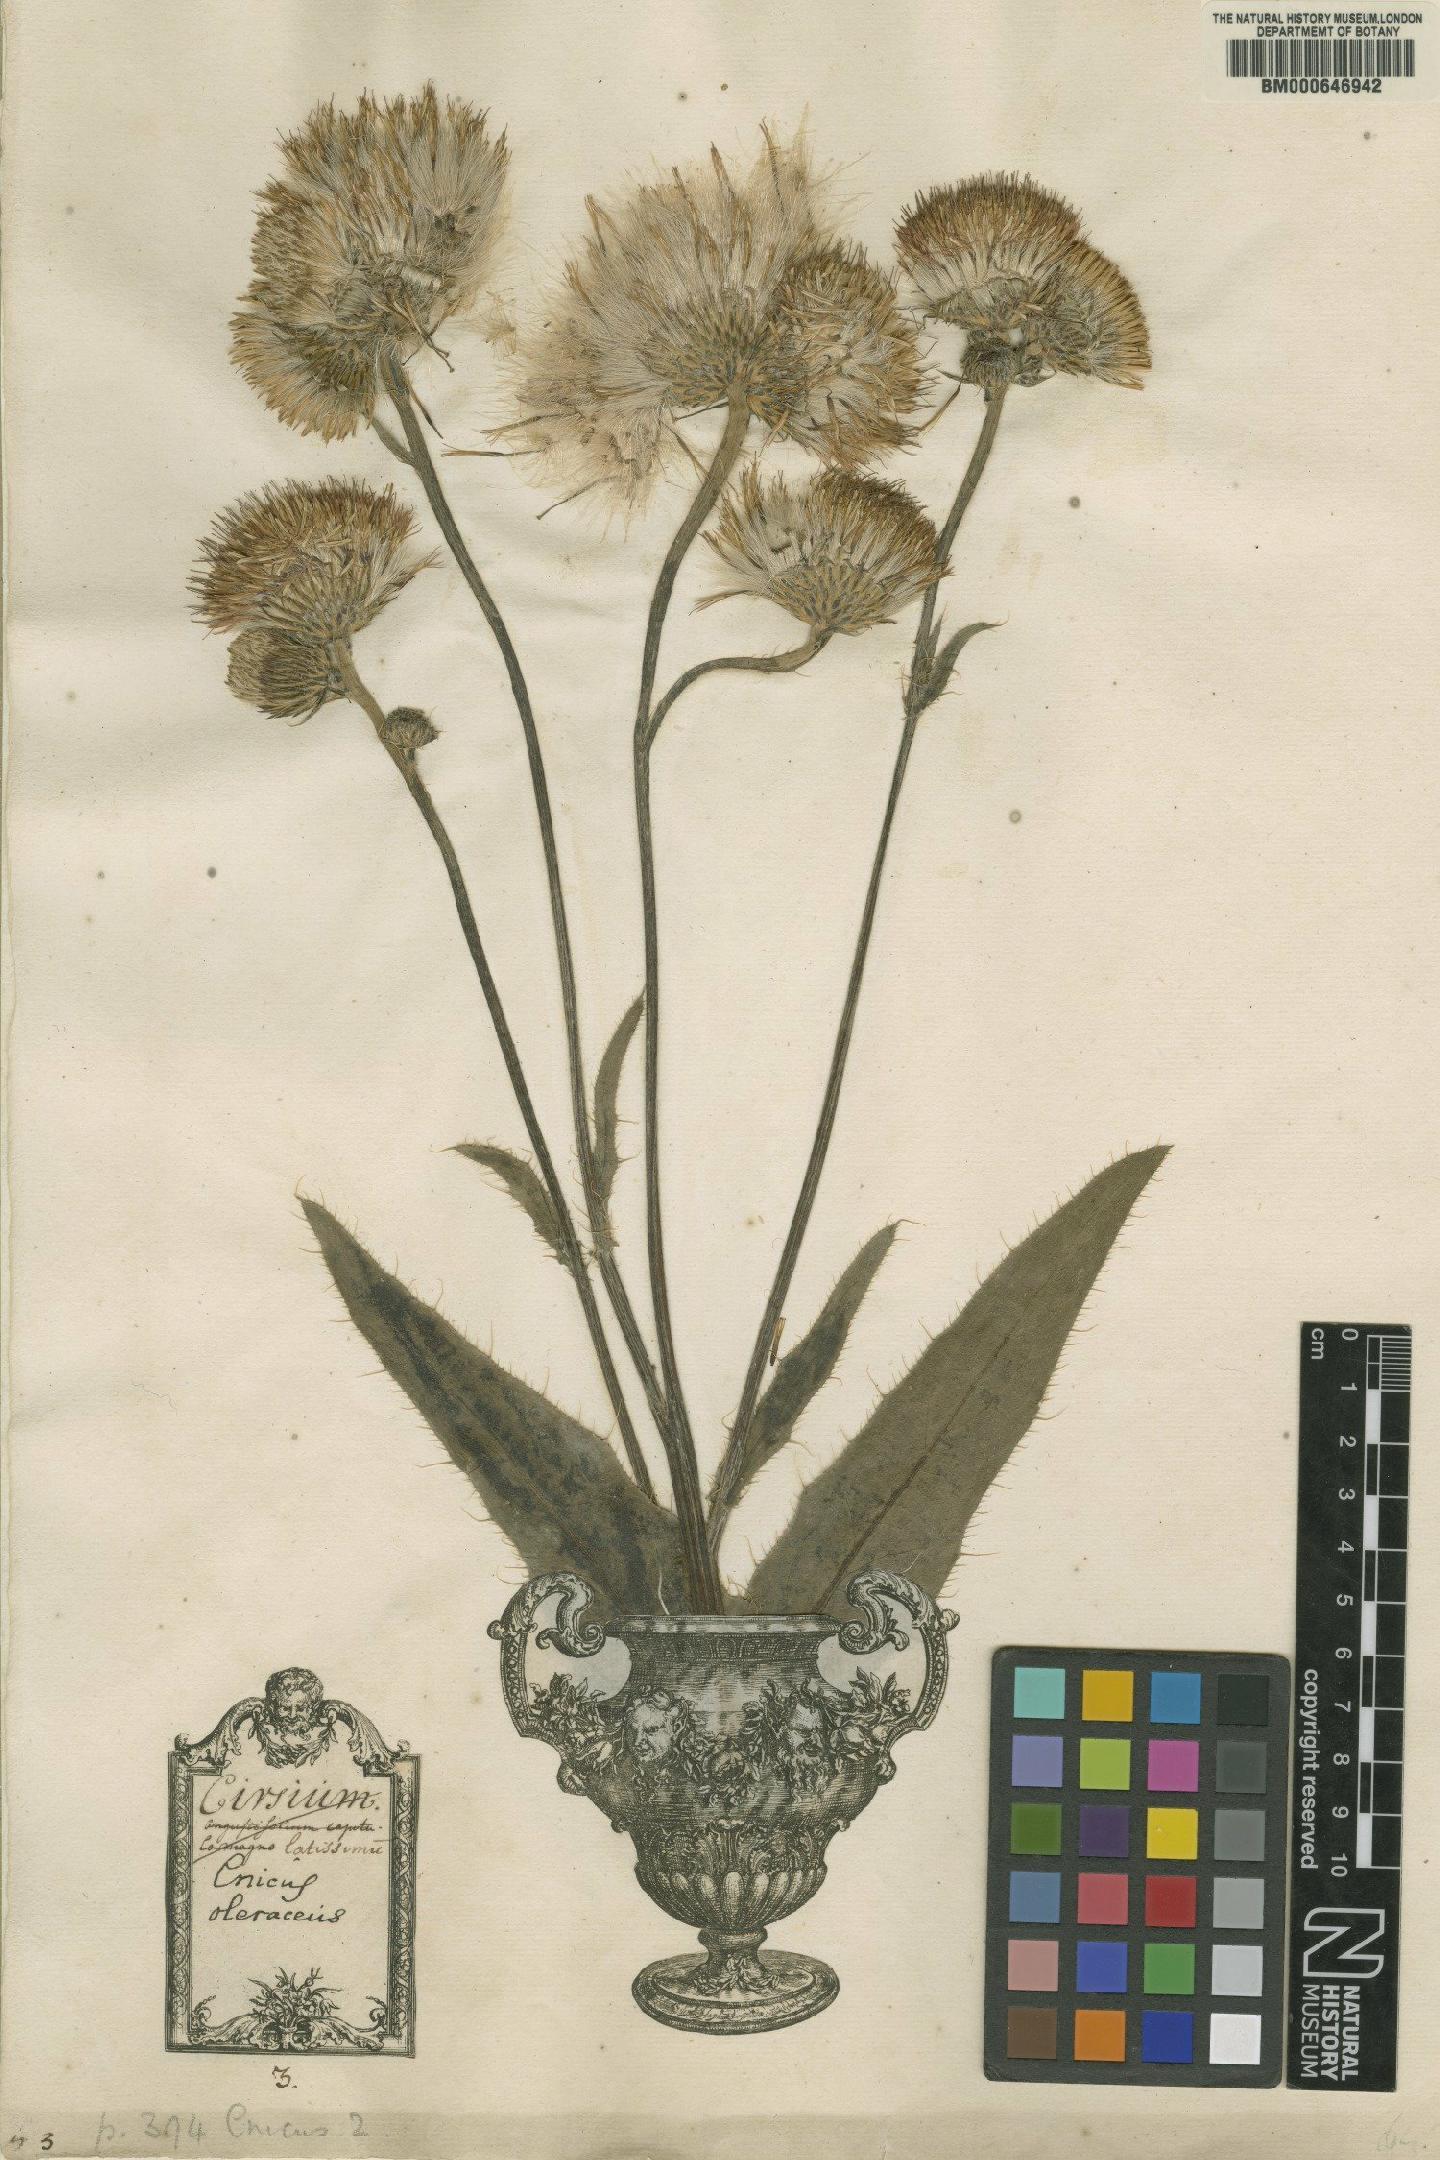 To NHMUK collection (Cnicus oleraceus L.; Original material; NHMUK:ecatalogue:4702030)